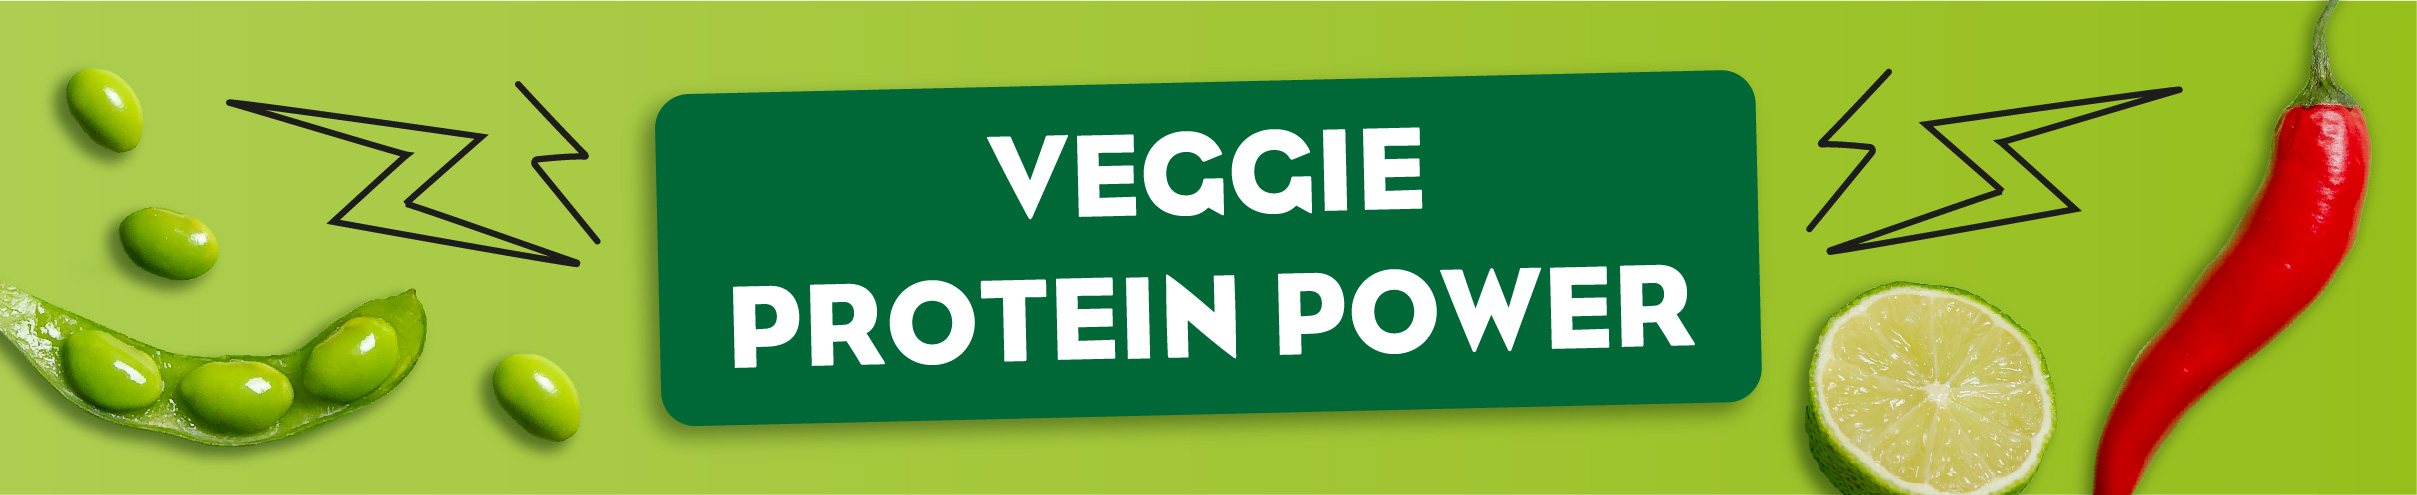 veggie protein power